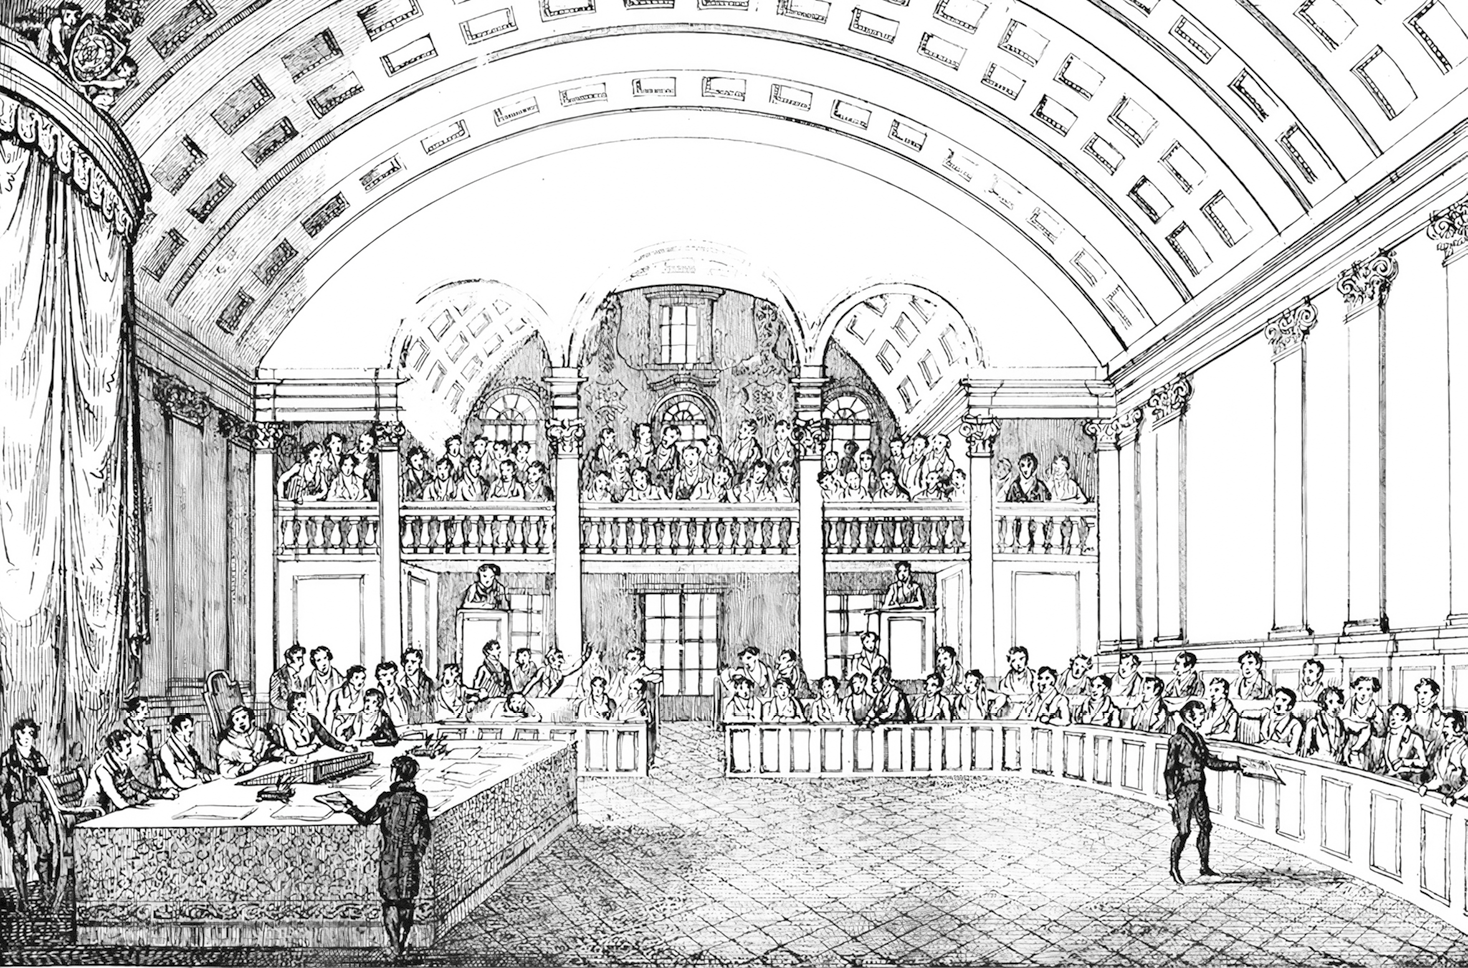 Gravura em preto e branco. Vista de um cômodo grande decorado com colunas e arcos. À esquerda, uma mesa grande com pessoas sentadas. Ao redor, uma bancada em meia lua com pessoas sentadas. Ao fundo, na parte superior, um mezanino com pessoas sentadas.